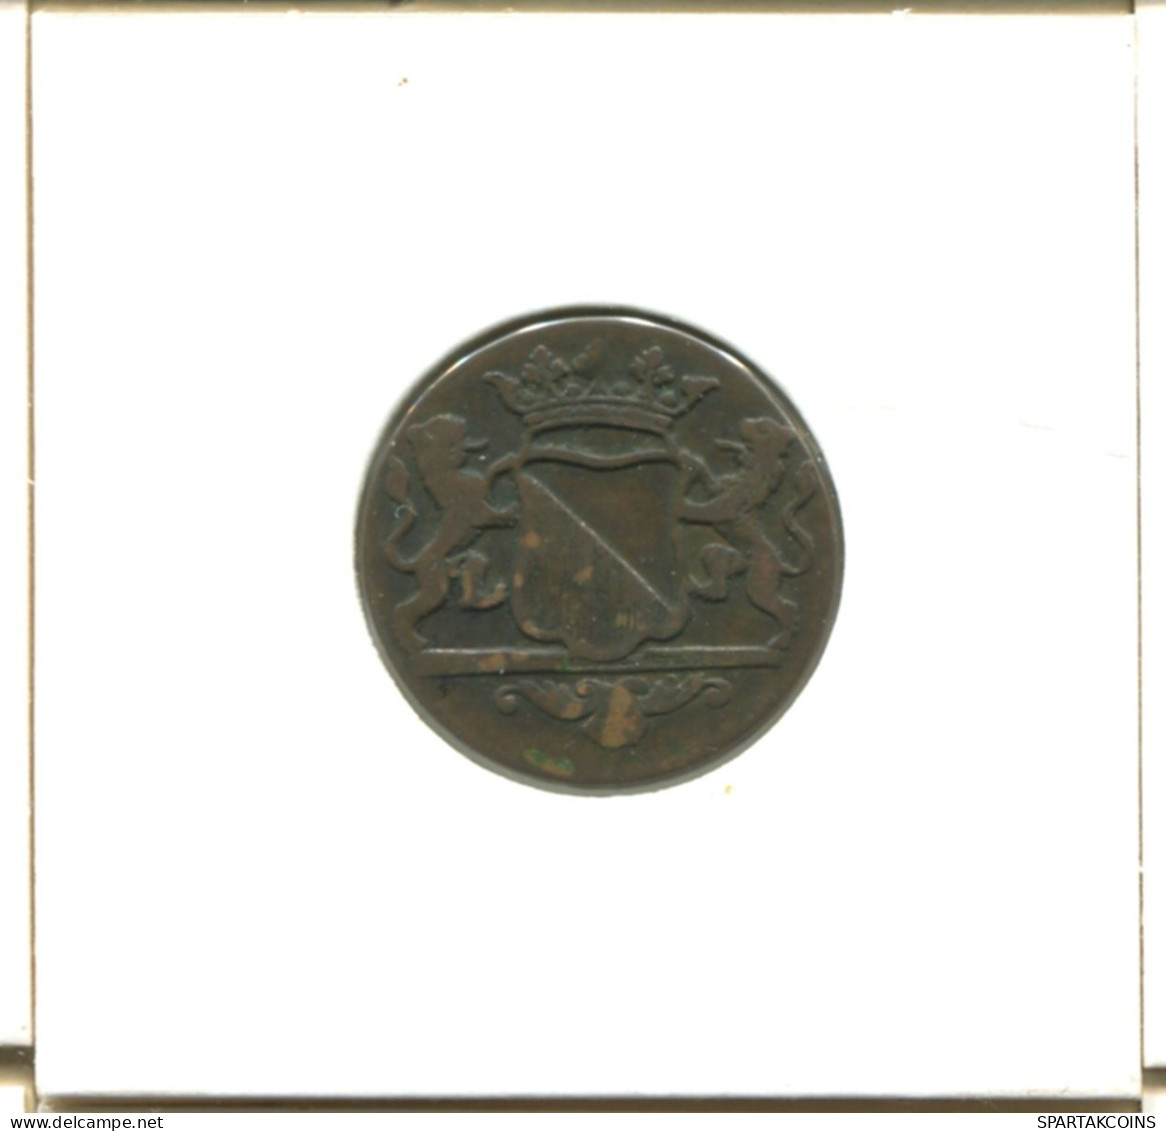 1790 UTRECHT VOC DUIT NIEDERLANDE OSTINDIEN Koloniale Münze #E16734.8.D.A - Niederländisch-Indien